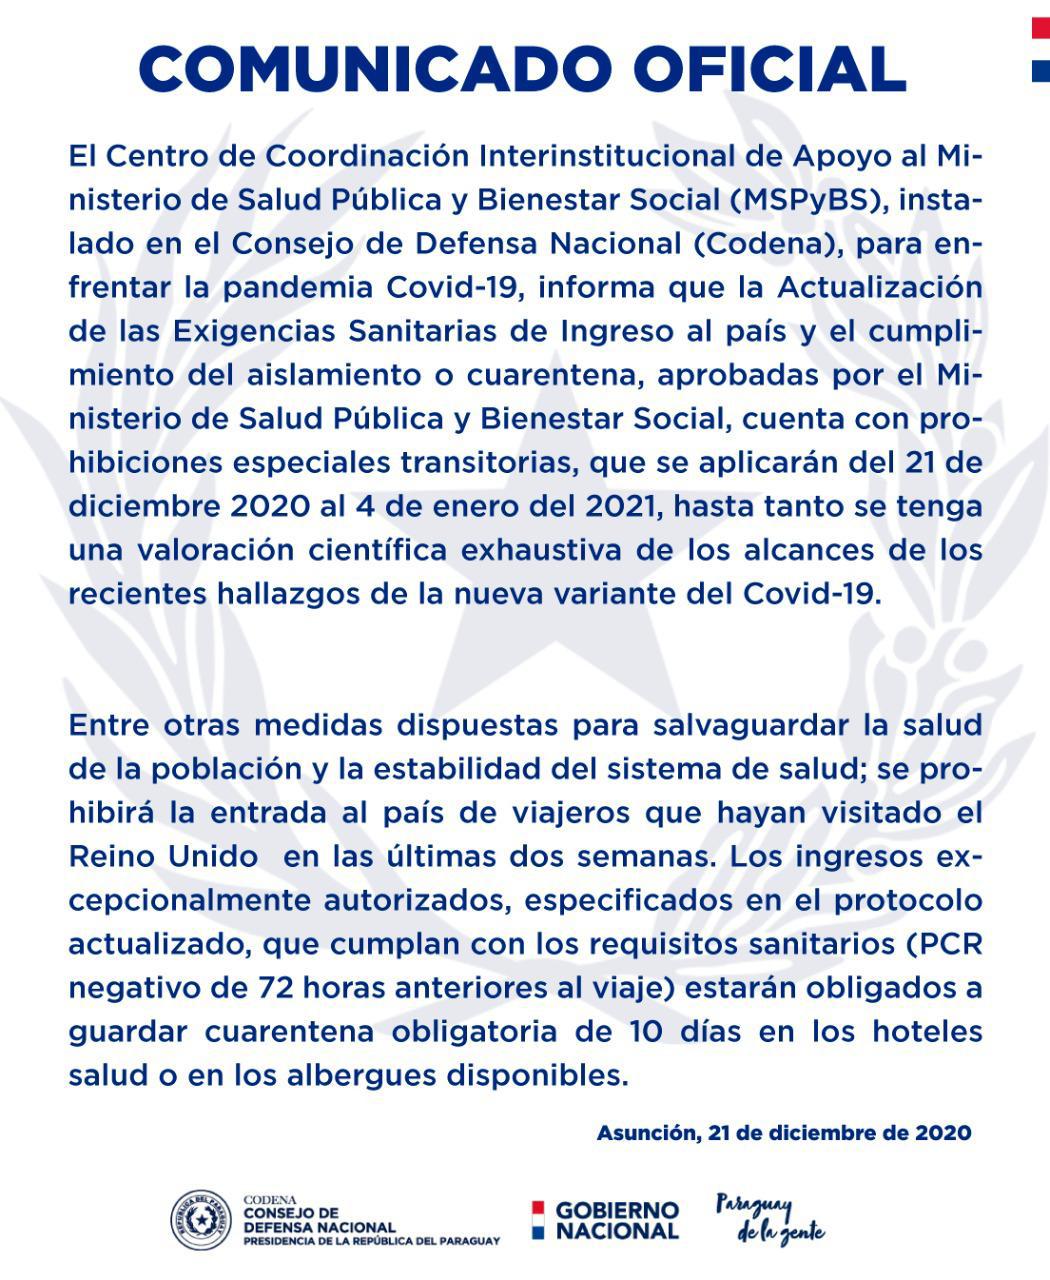 Paraguay prohíbe el ingreso al país de personas que hayan visitado el Reino Unido.